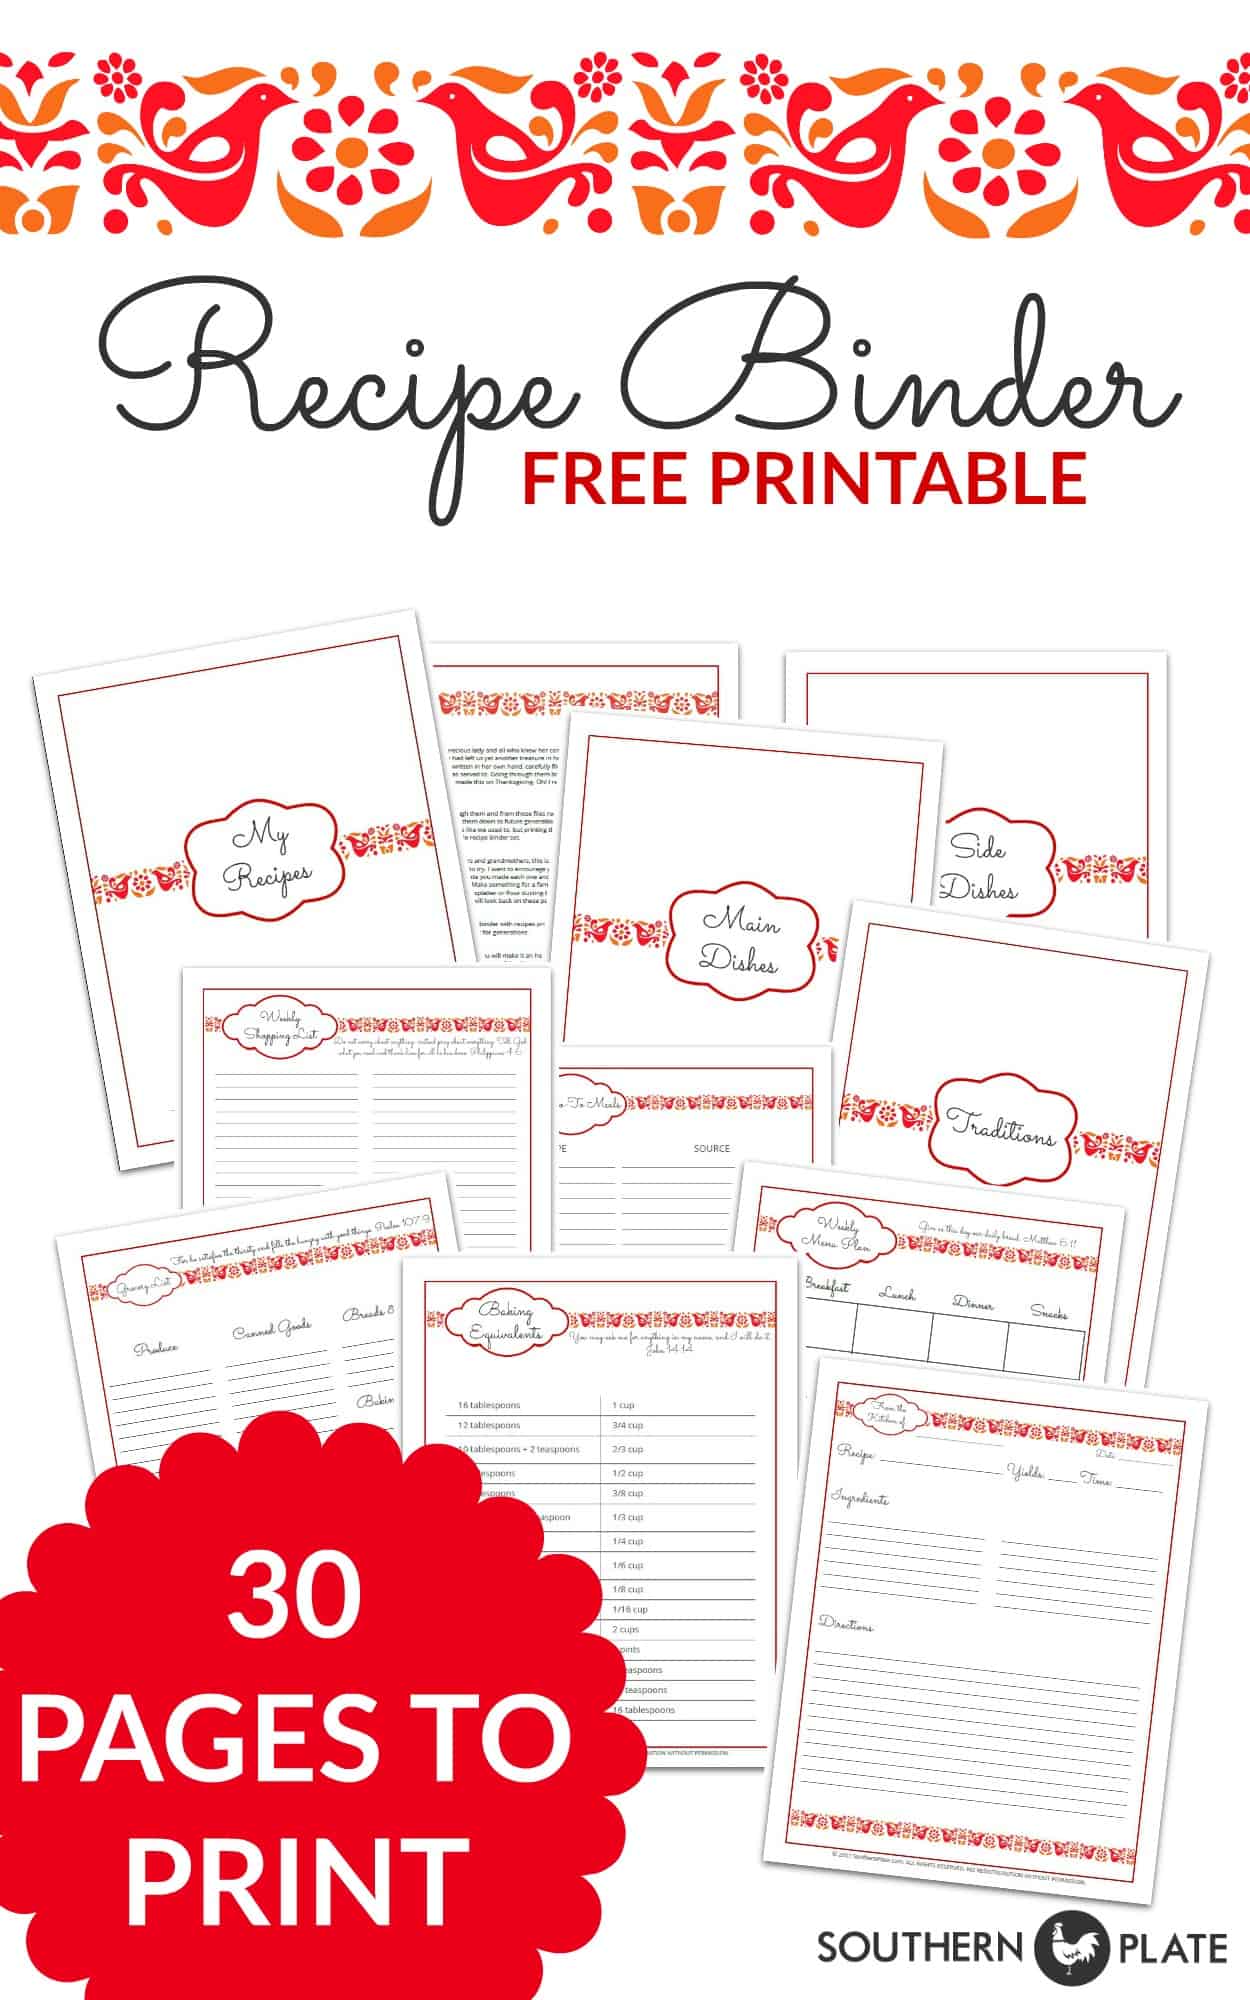 FREE Printable Recipe Binder